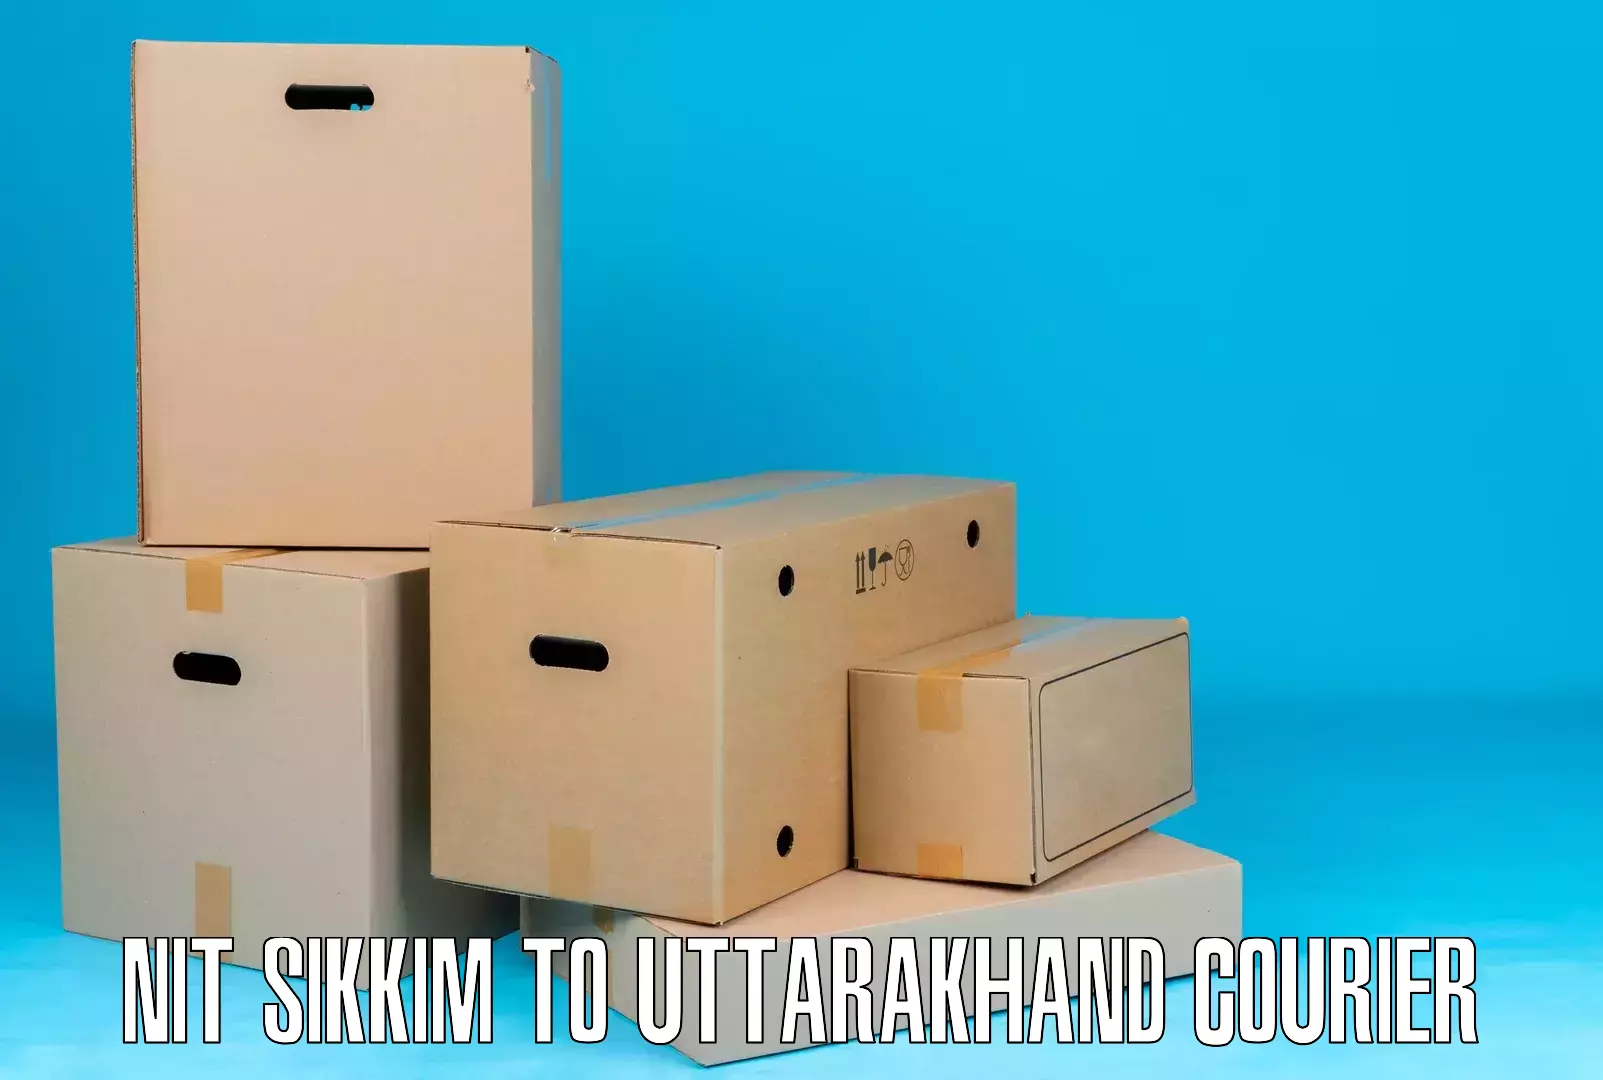 Quality courier partnerships NIT Sikkim to Uttarkashi